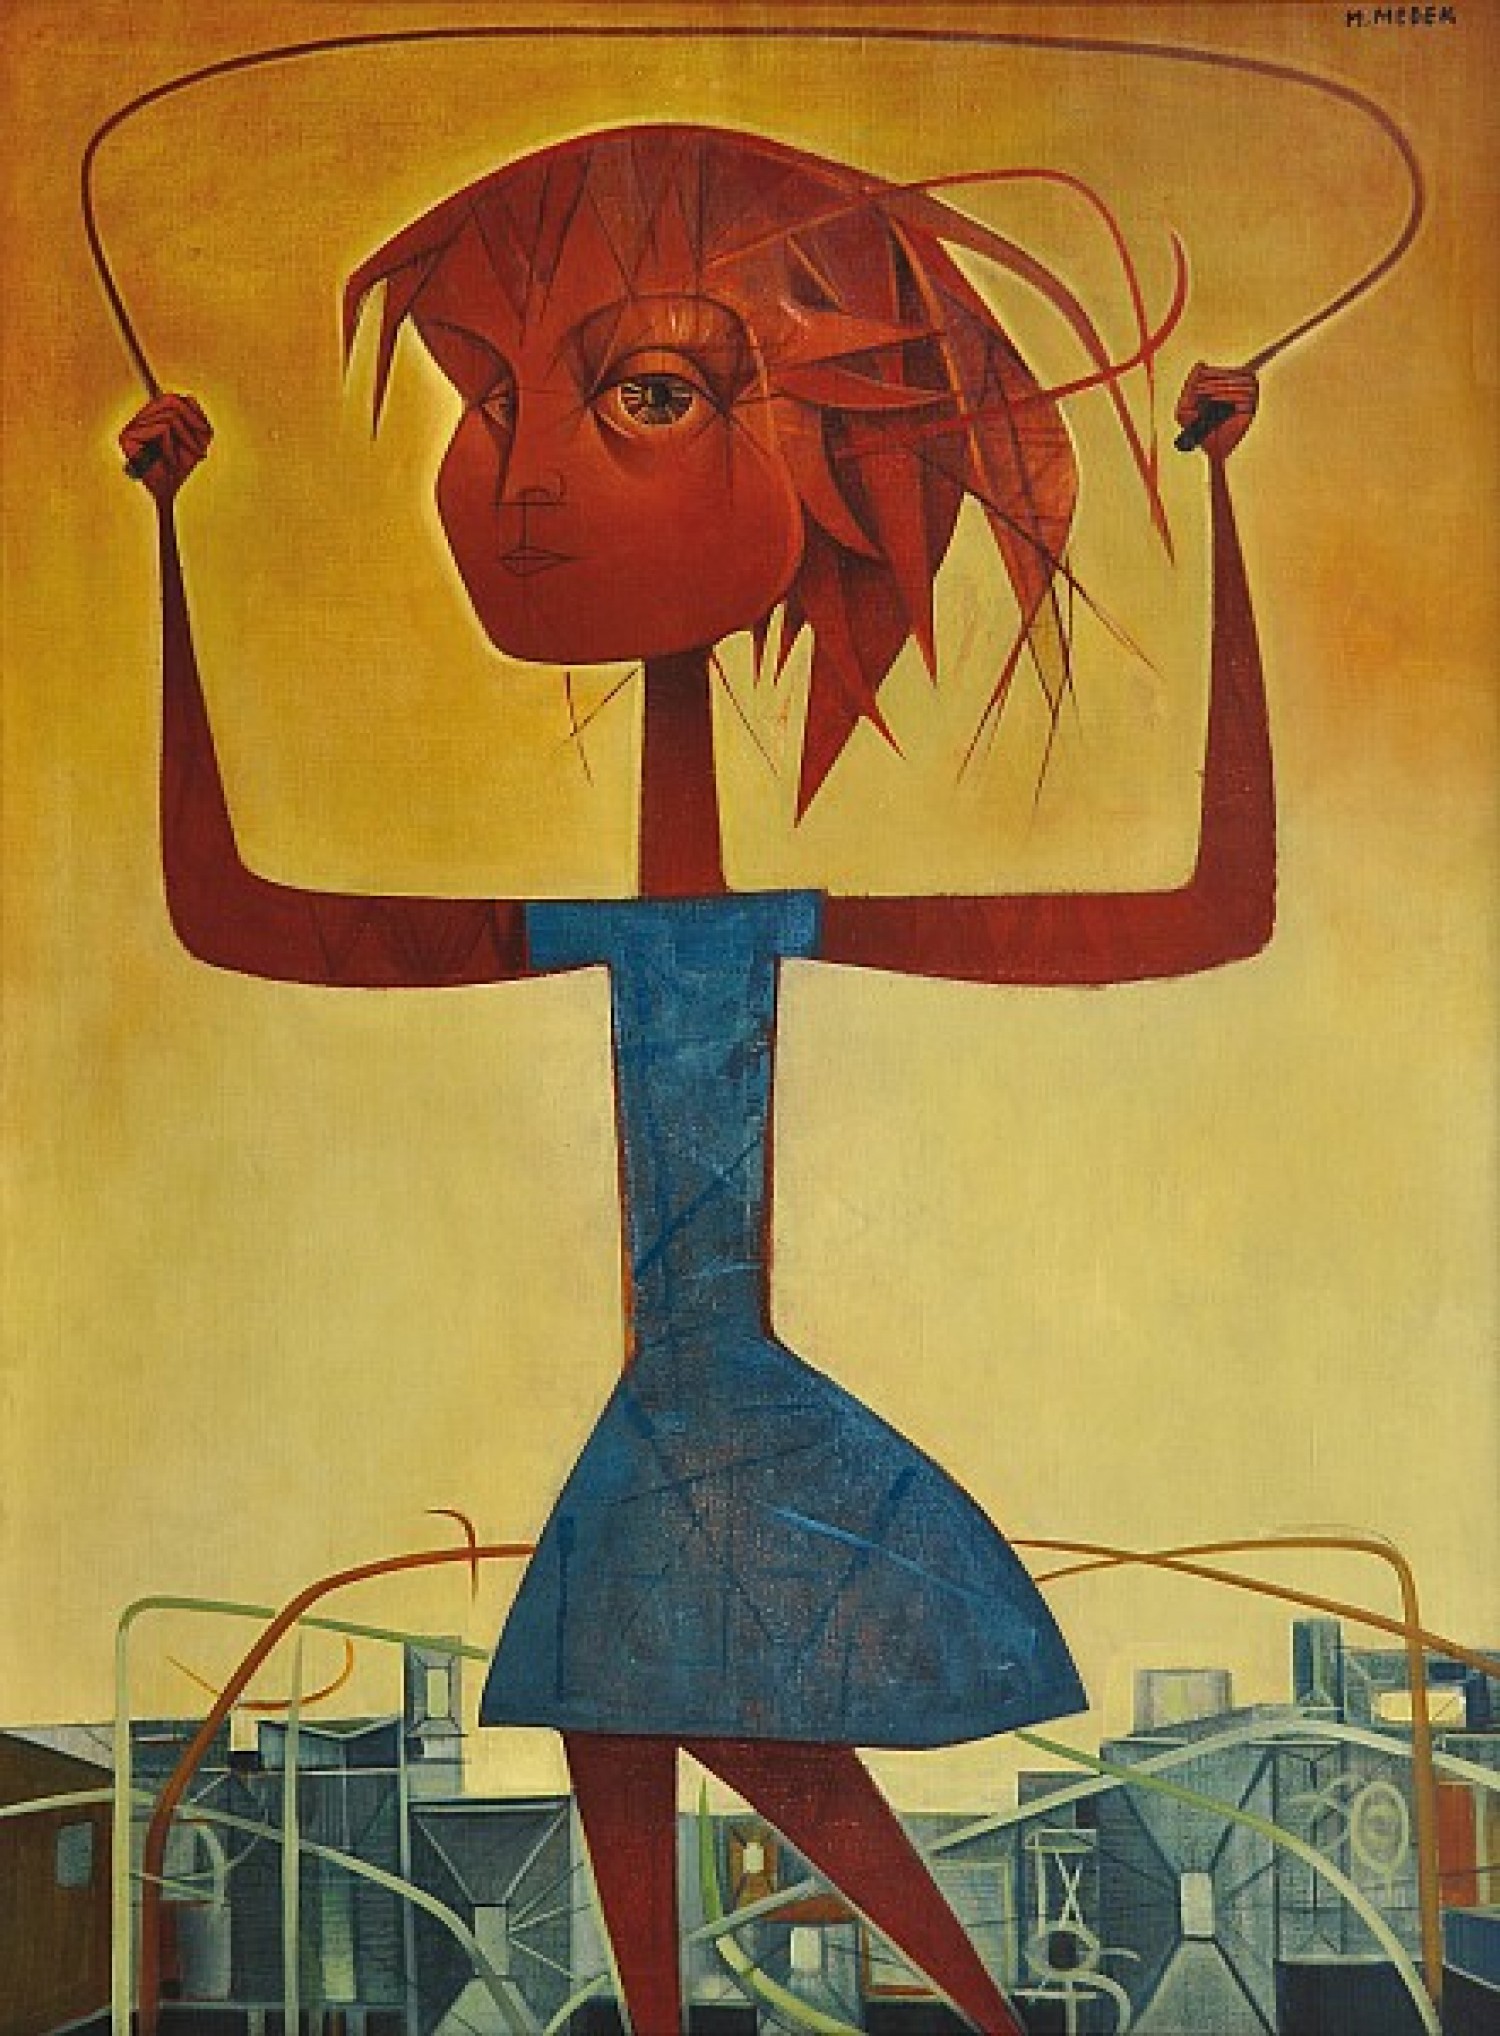 Mikuláš Medek: Dívka se švihadlem olej na plátně, 130 x 94 cm cena 6 000 000 Kč Galerie Kodl 19. 5. 2013 